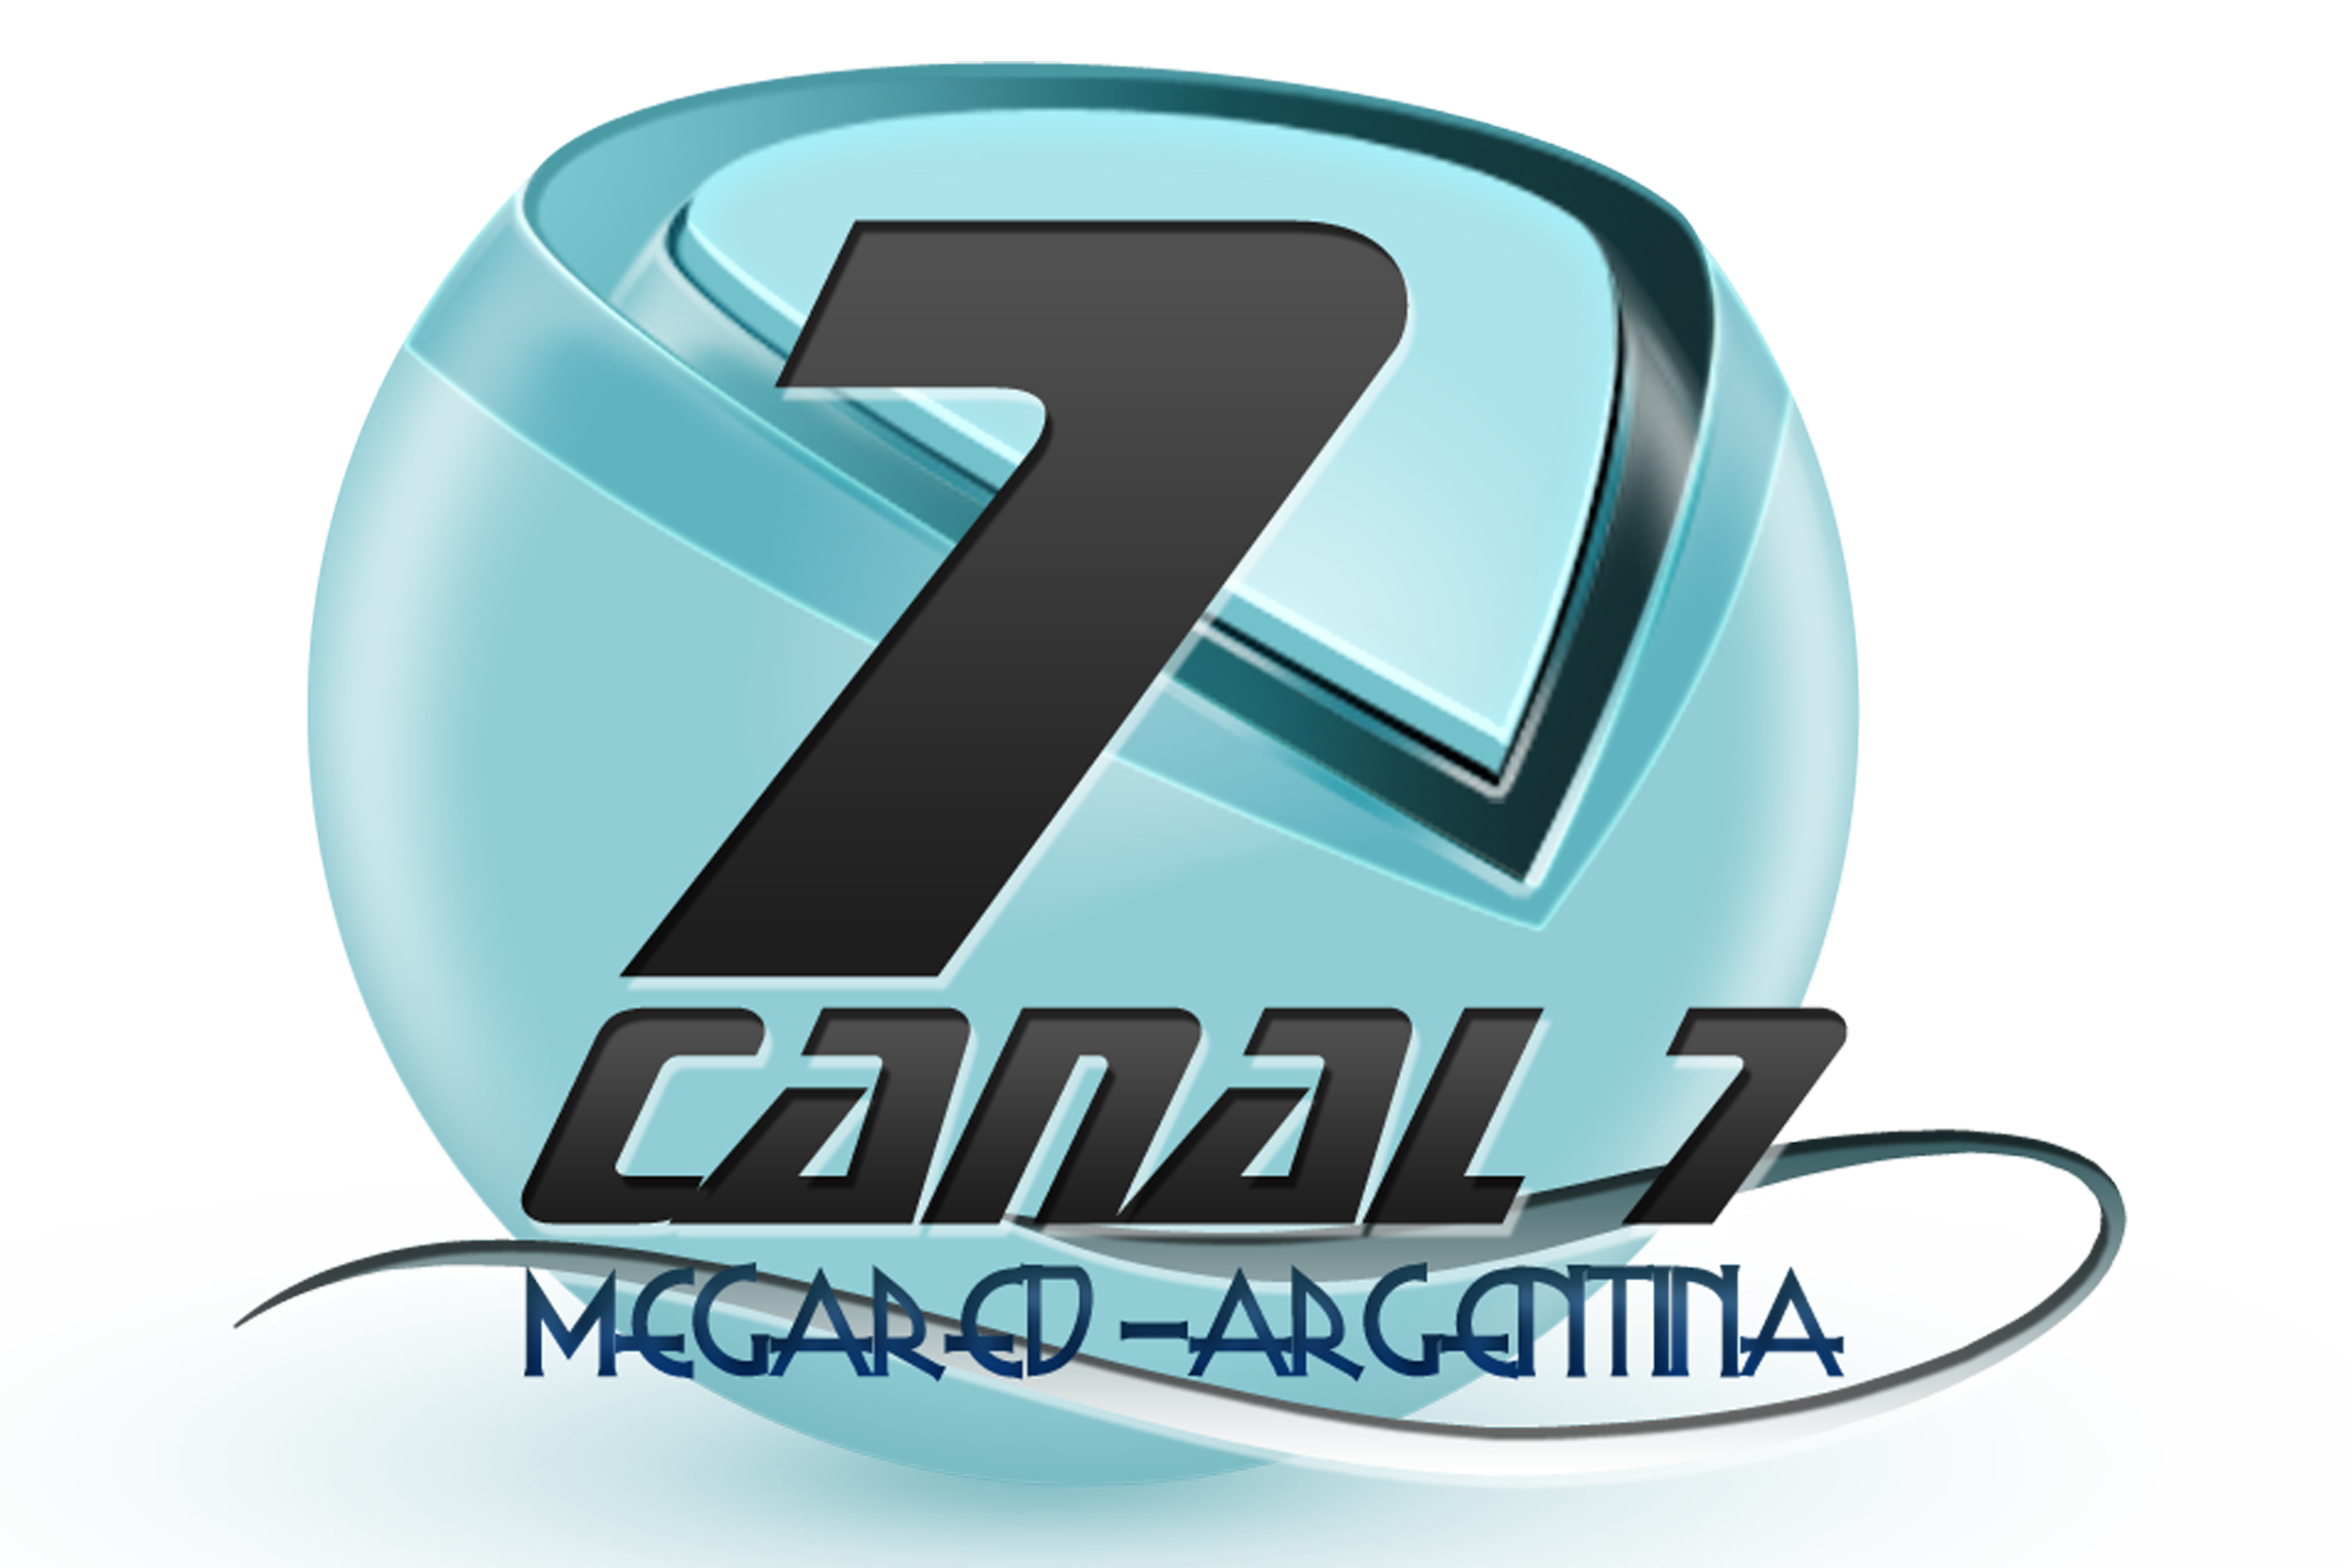 logocanal7.jpg - 767.71 kb